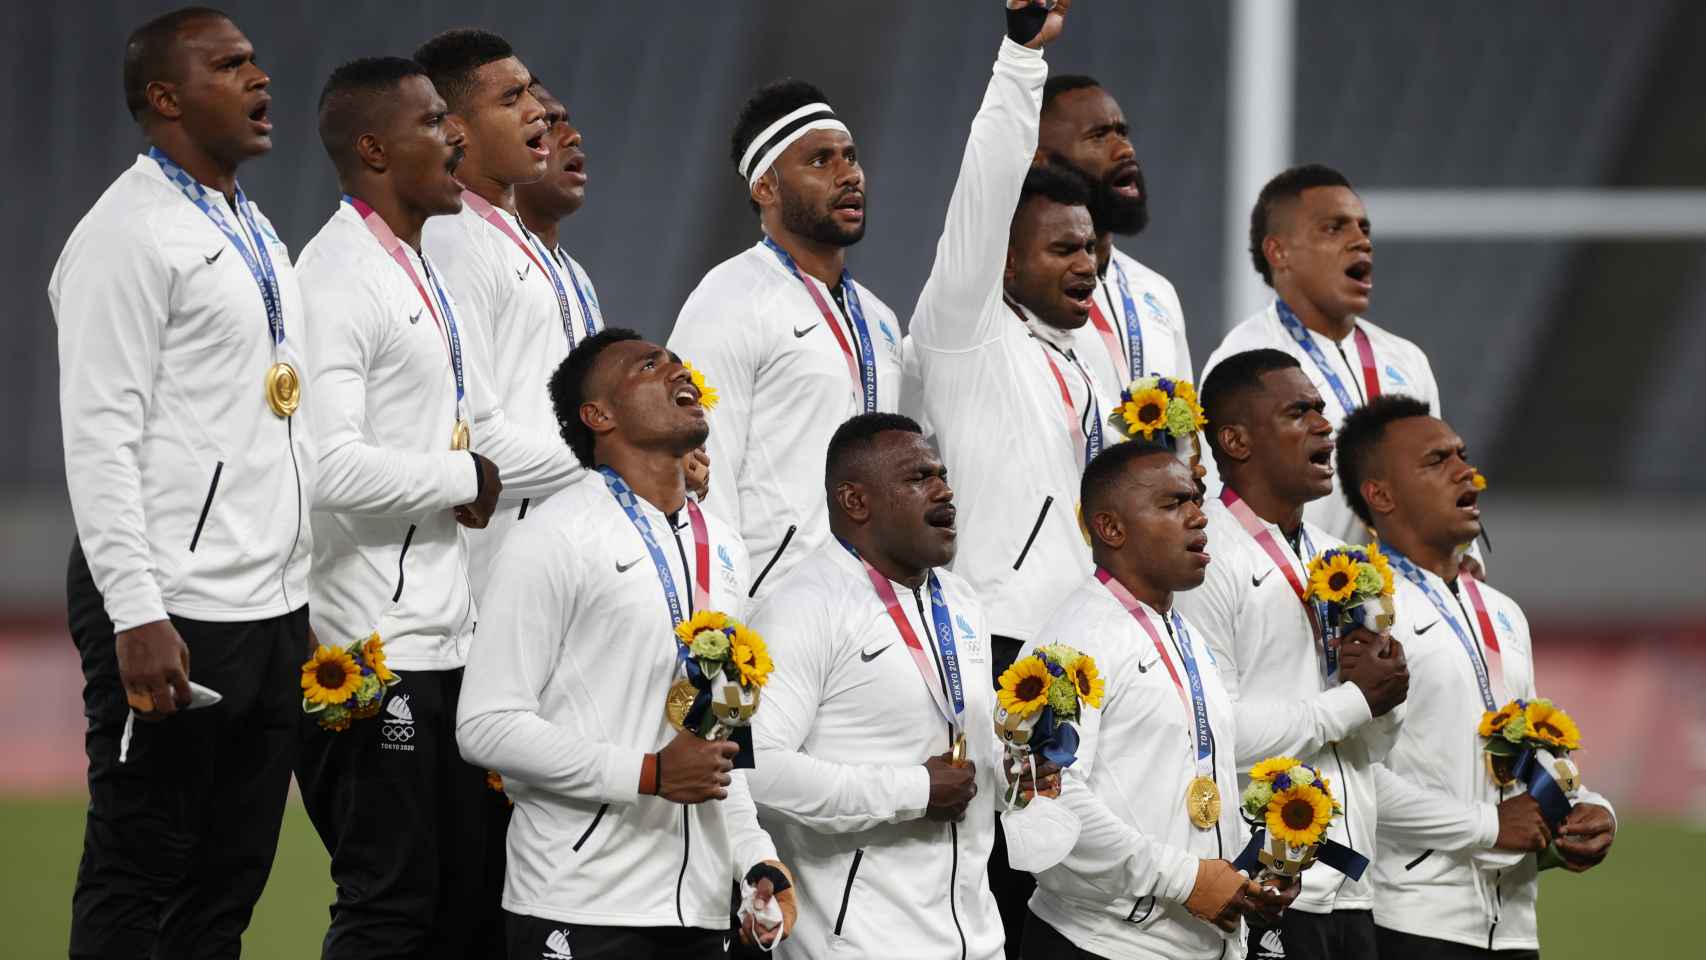 Los jugadores de la selección de Fiyi de rugby, en el podio en los Juegos Olímpicos de Tokio 2020